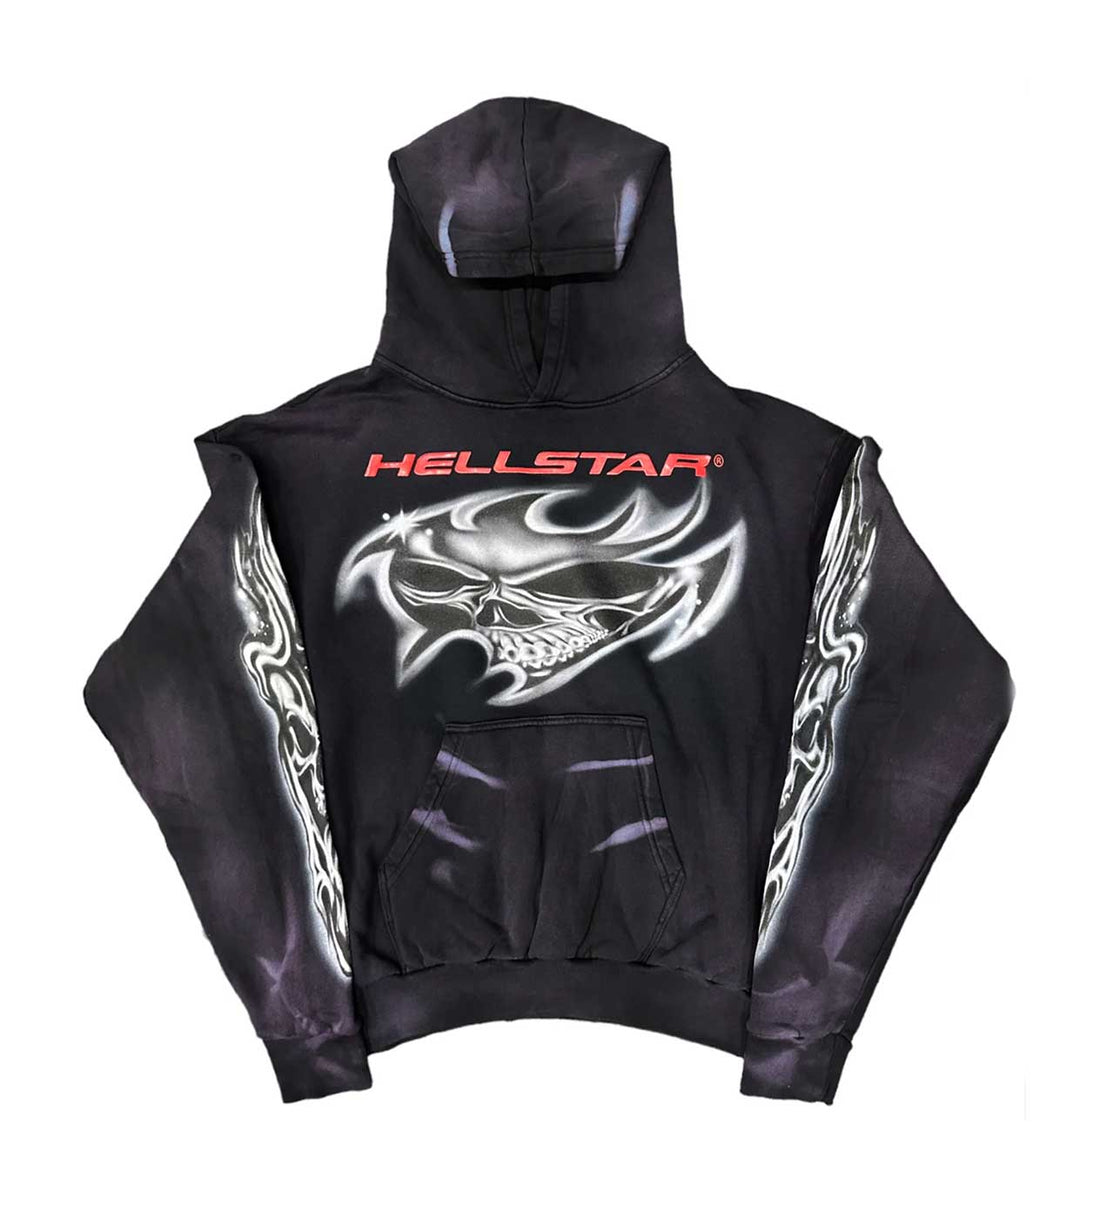 Hellstar Airbrushed Skull Hoodie Black Front View